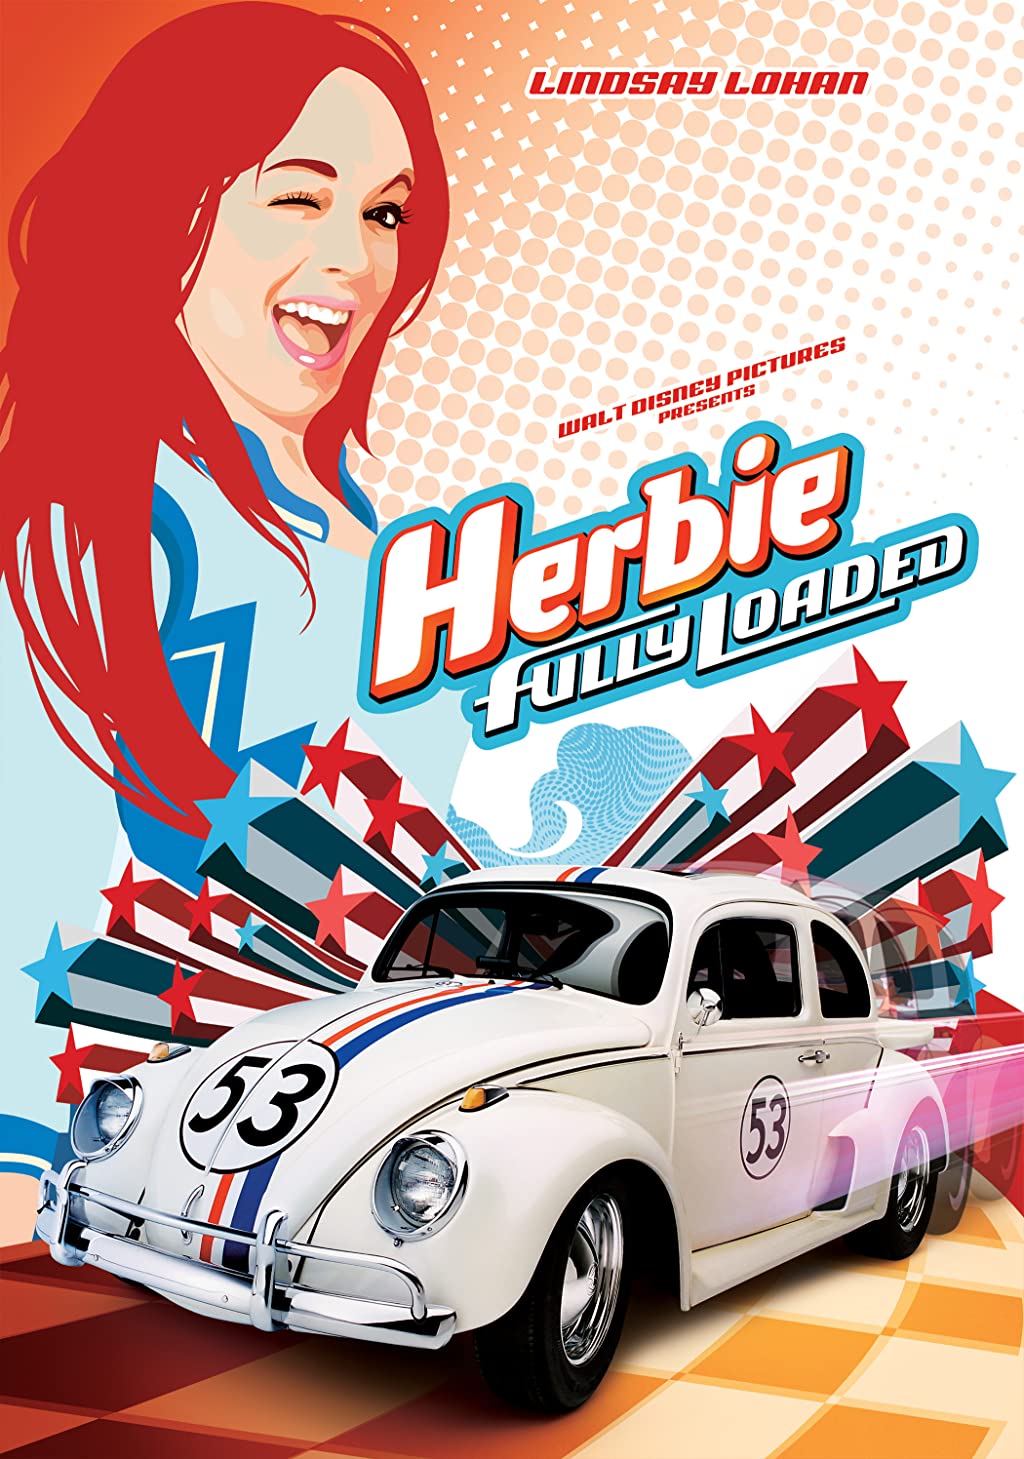 Herbie Nổi Loạn